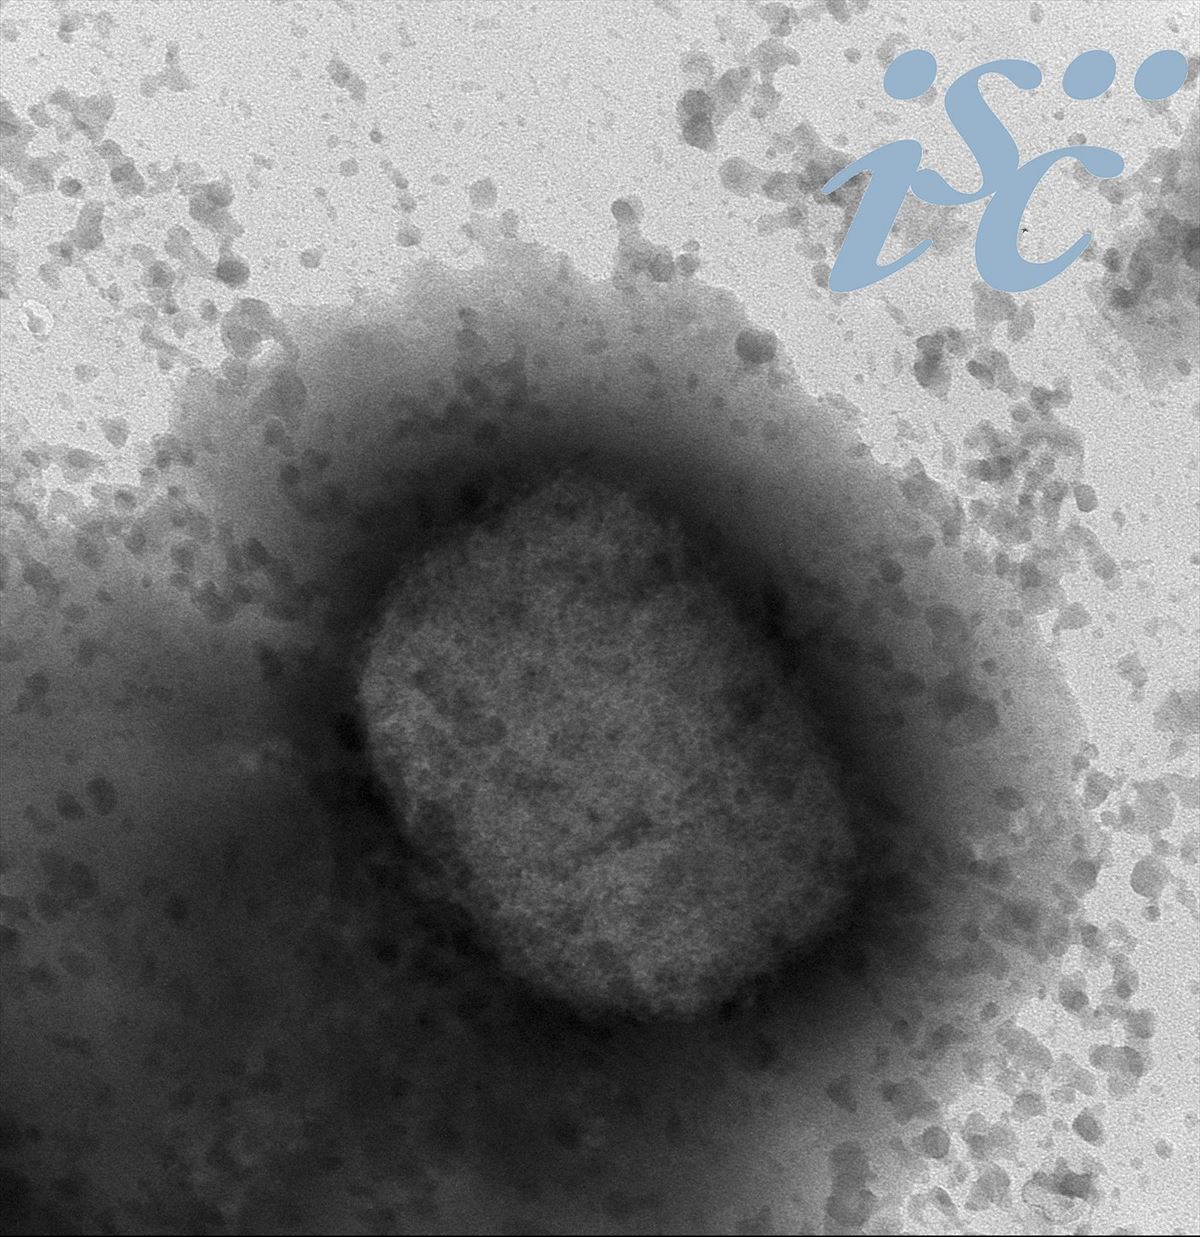 Virus de la viruela del mono por microscopía electrónica, facilitada por el Instituto de Salud Carlos III (ISCIII).